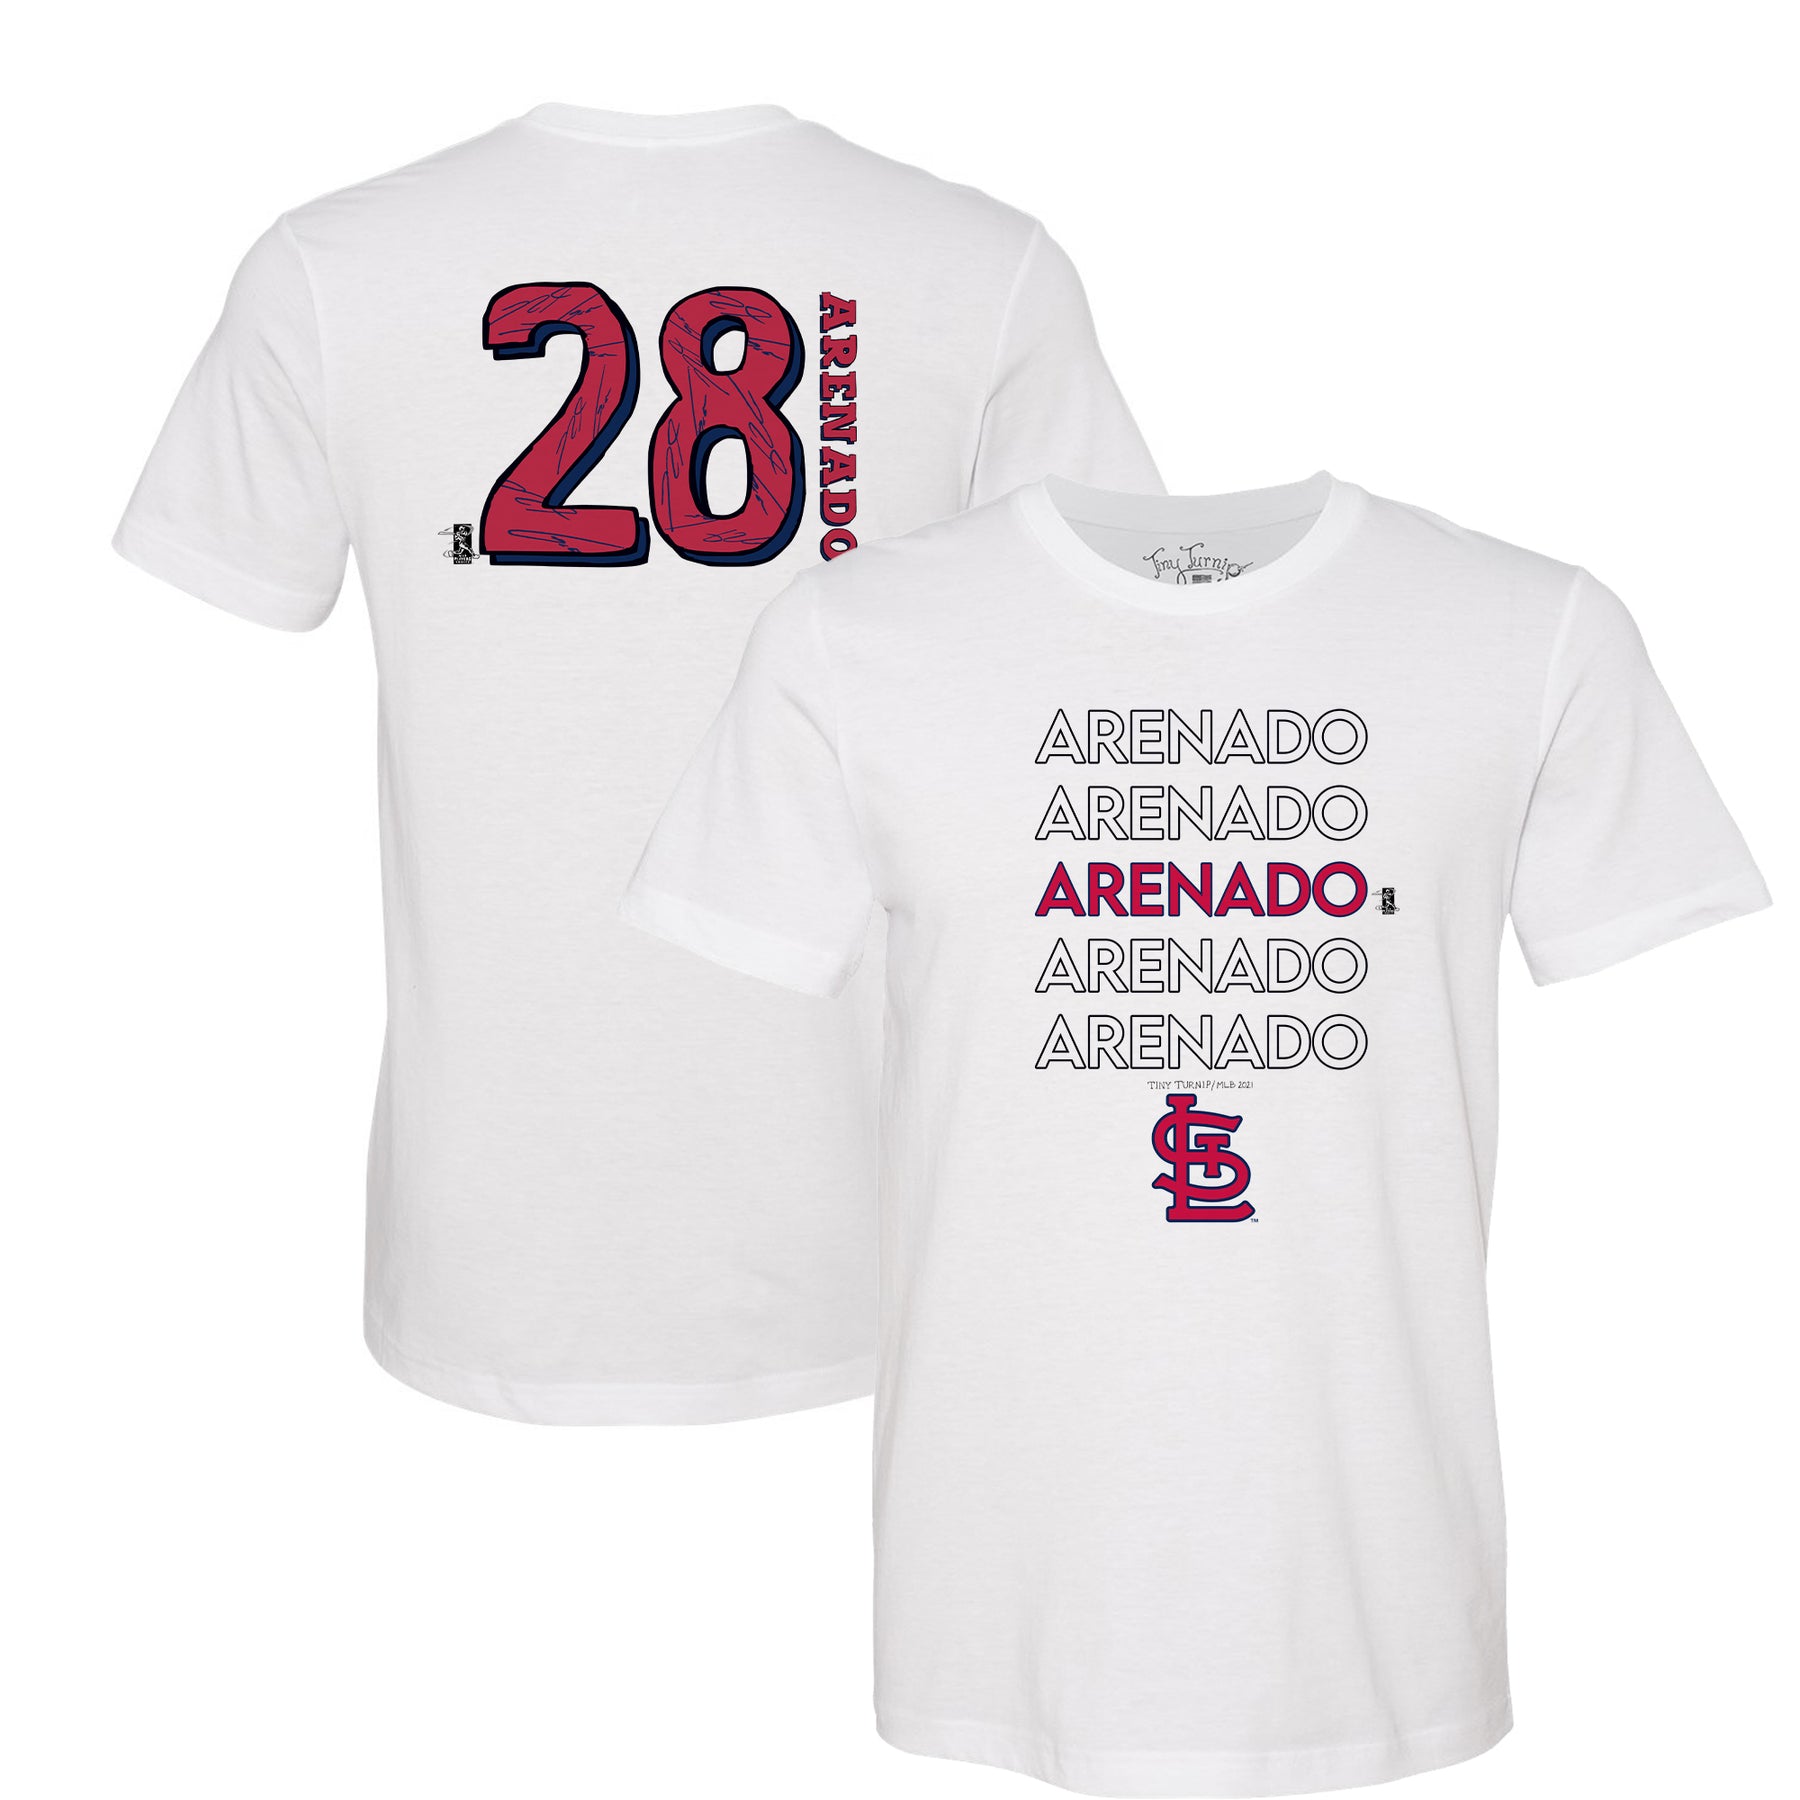 arenado shirt cardinals